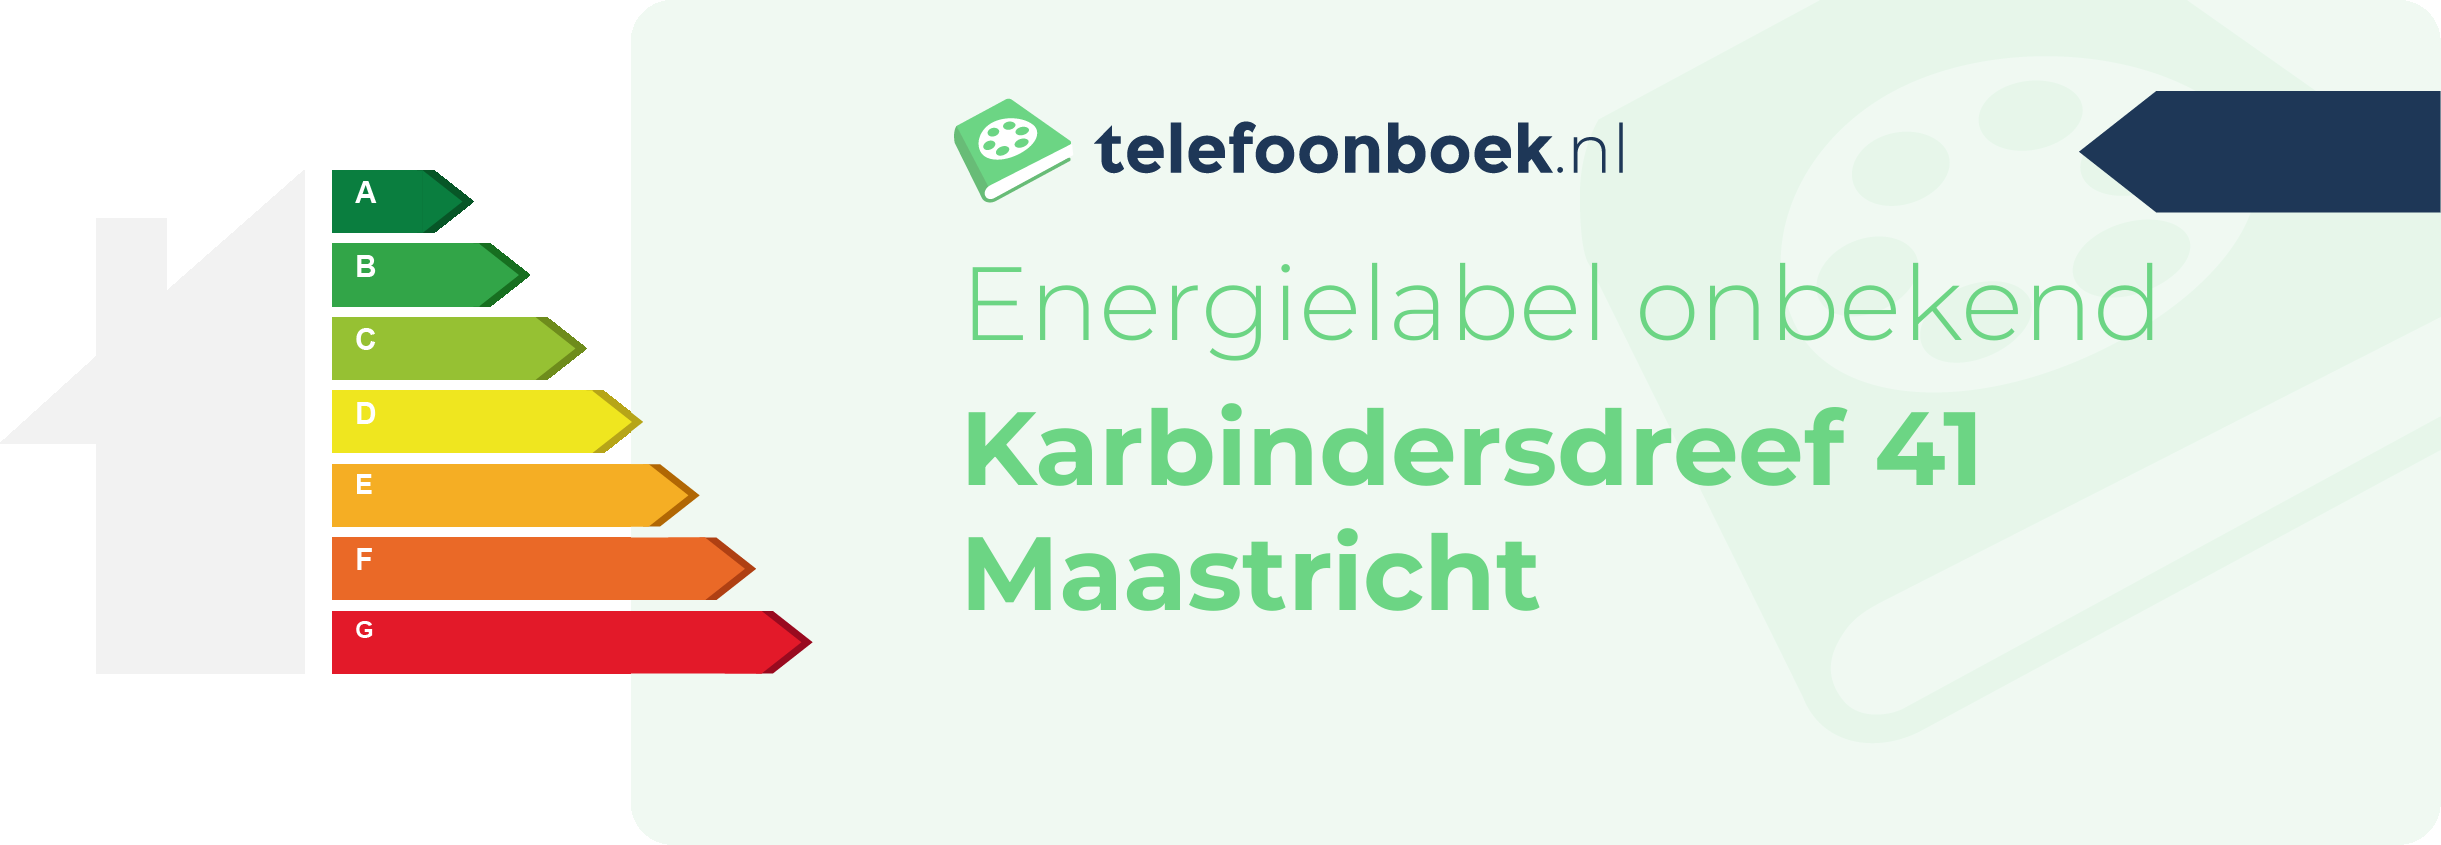 Energielabel Karbindersdreef 41 Maastricht